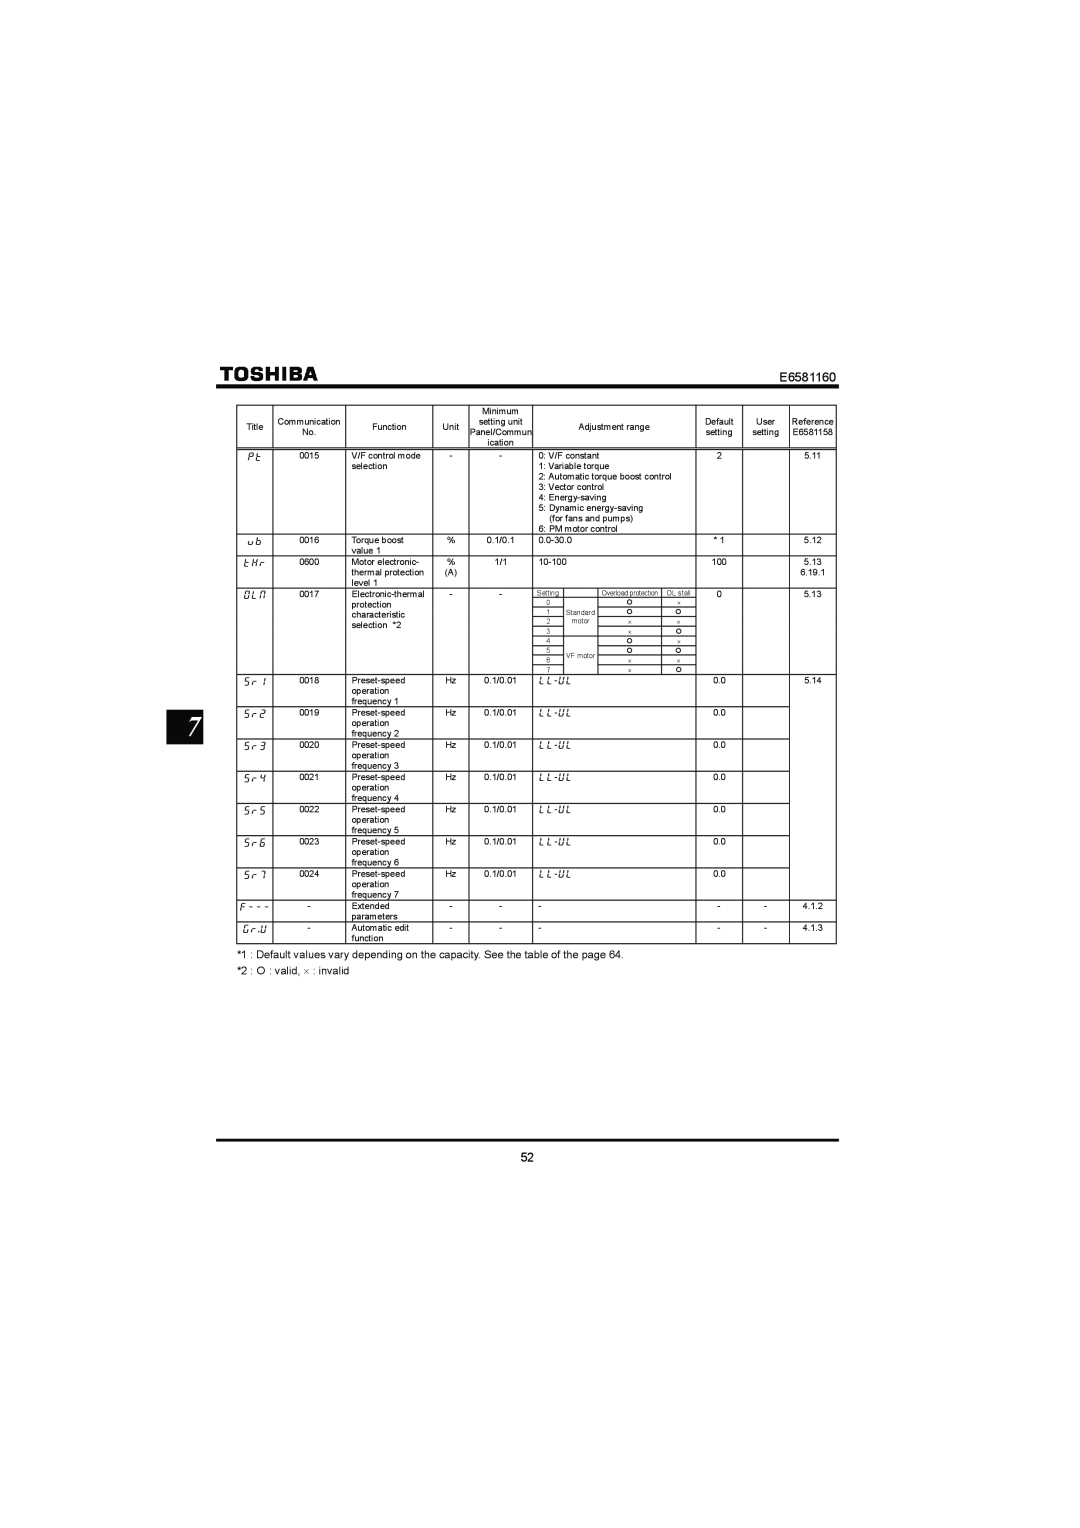 Toshiba VF-S11 manual E6581160, valid, ⋅ invalid 